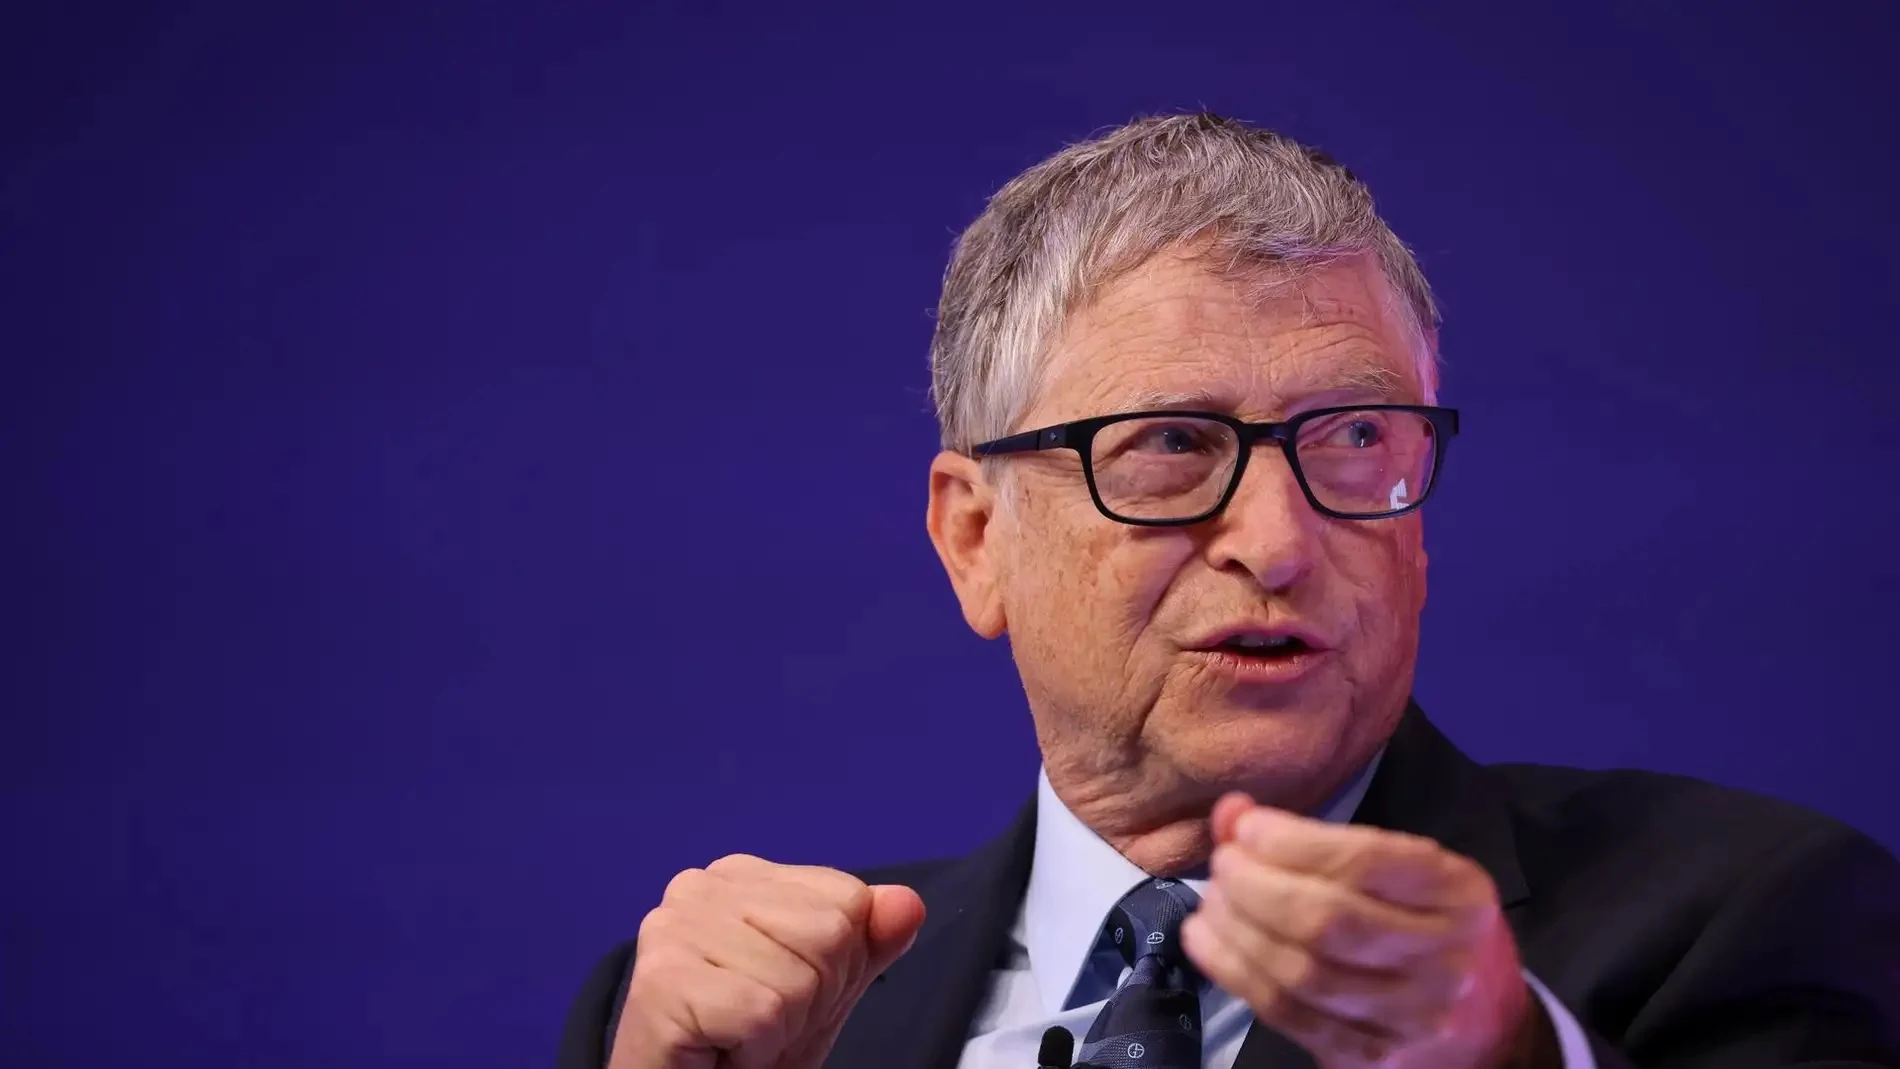 La dura predicción Bill Gates: esta será la próxima pandemia que afectará a la humanidad